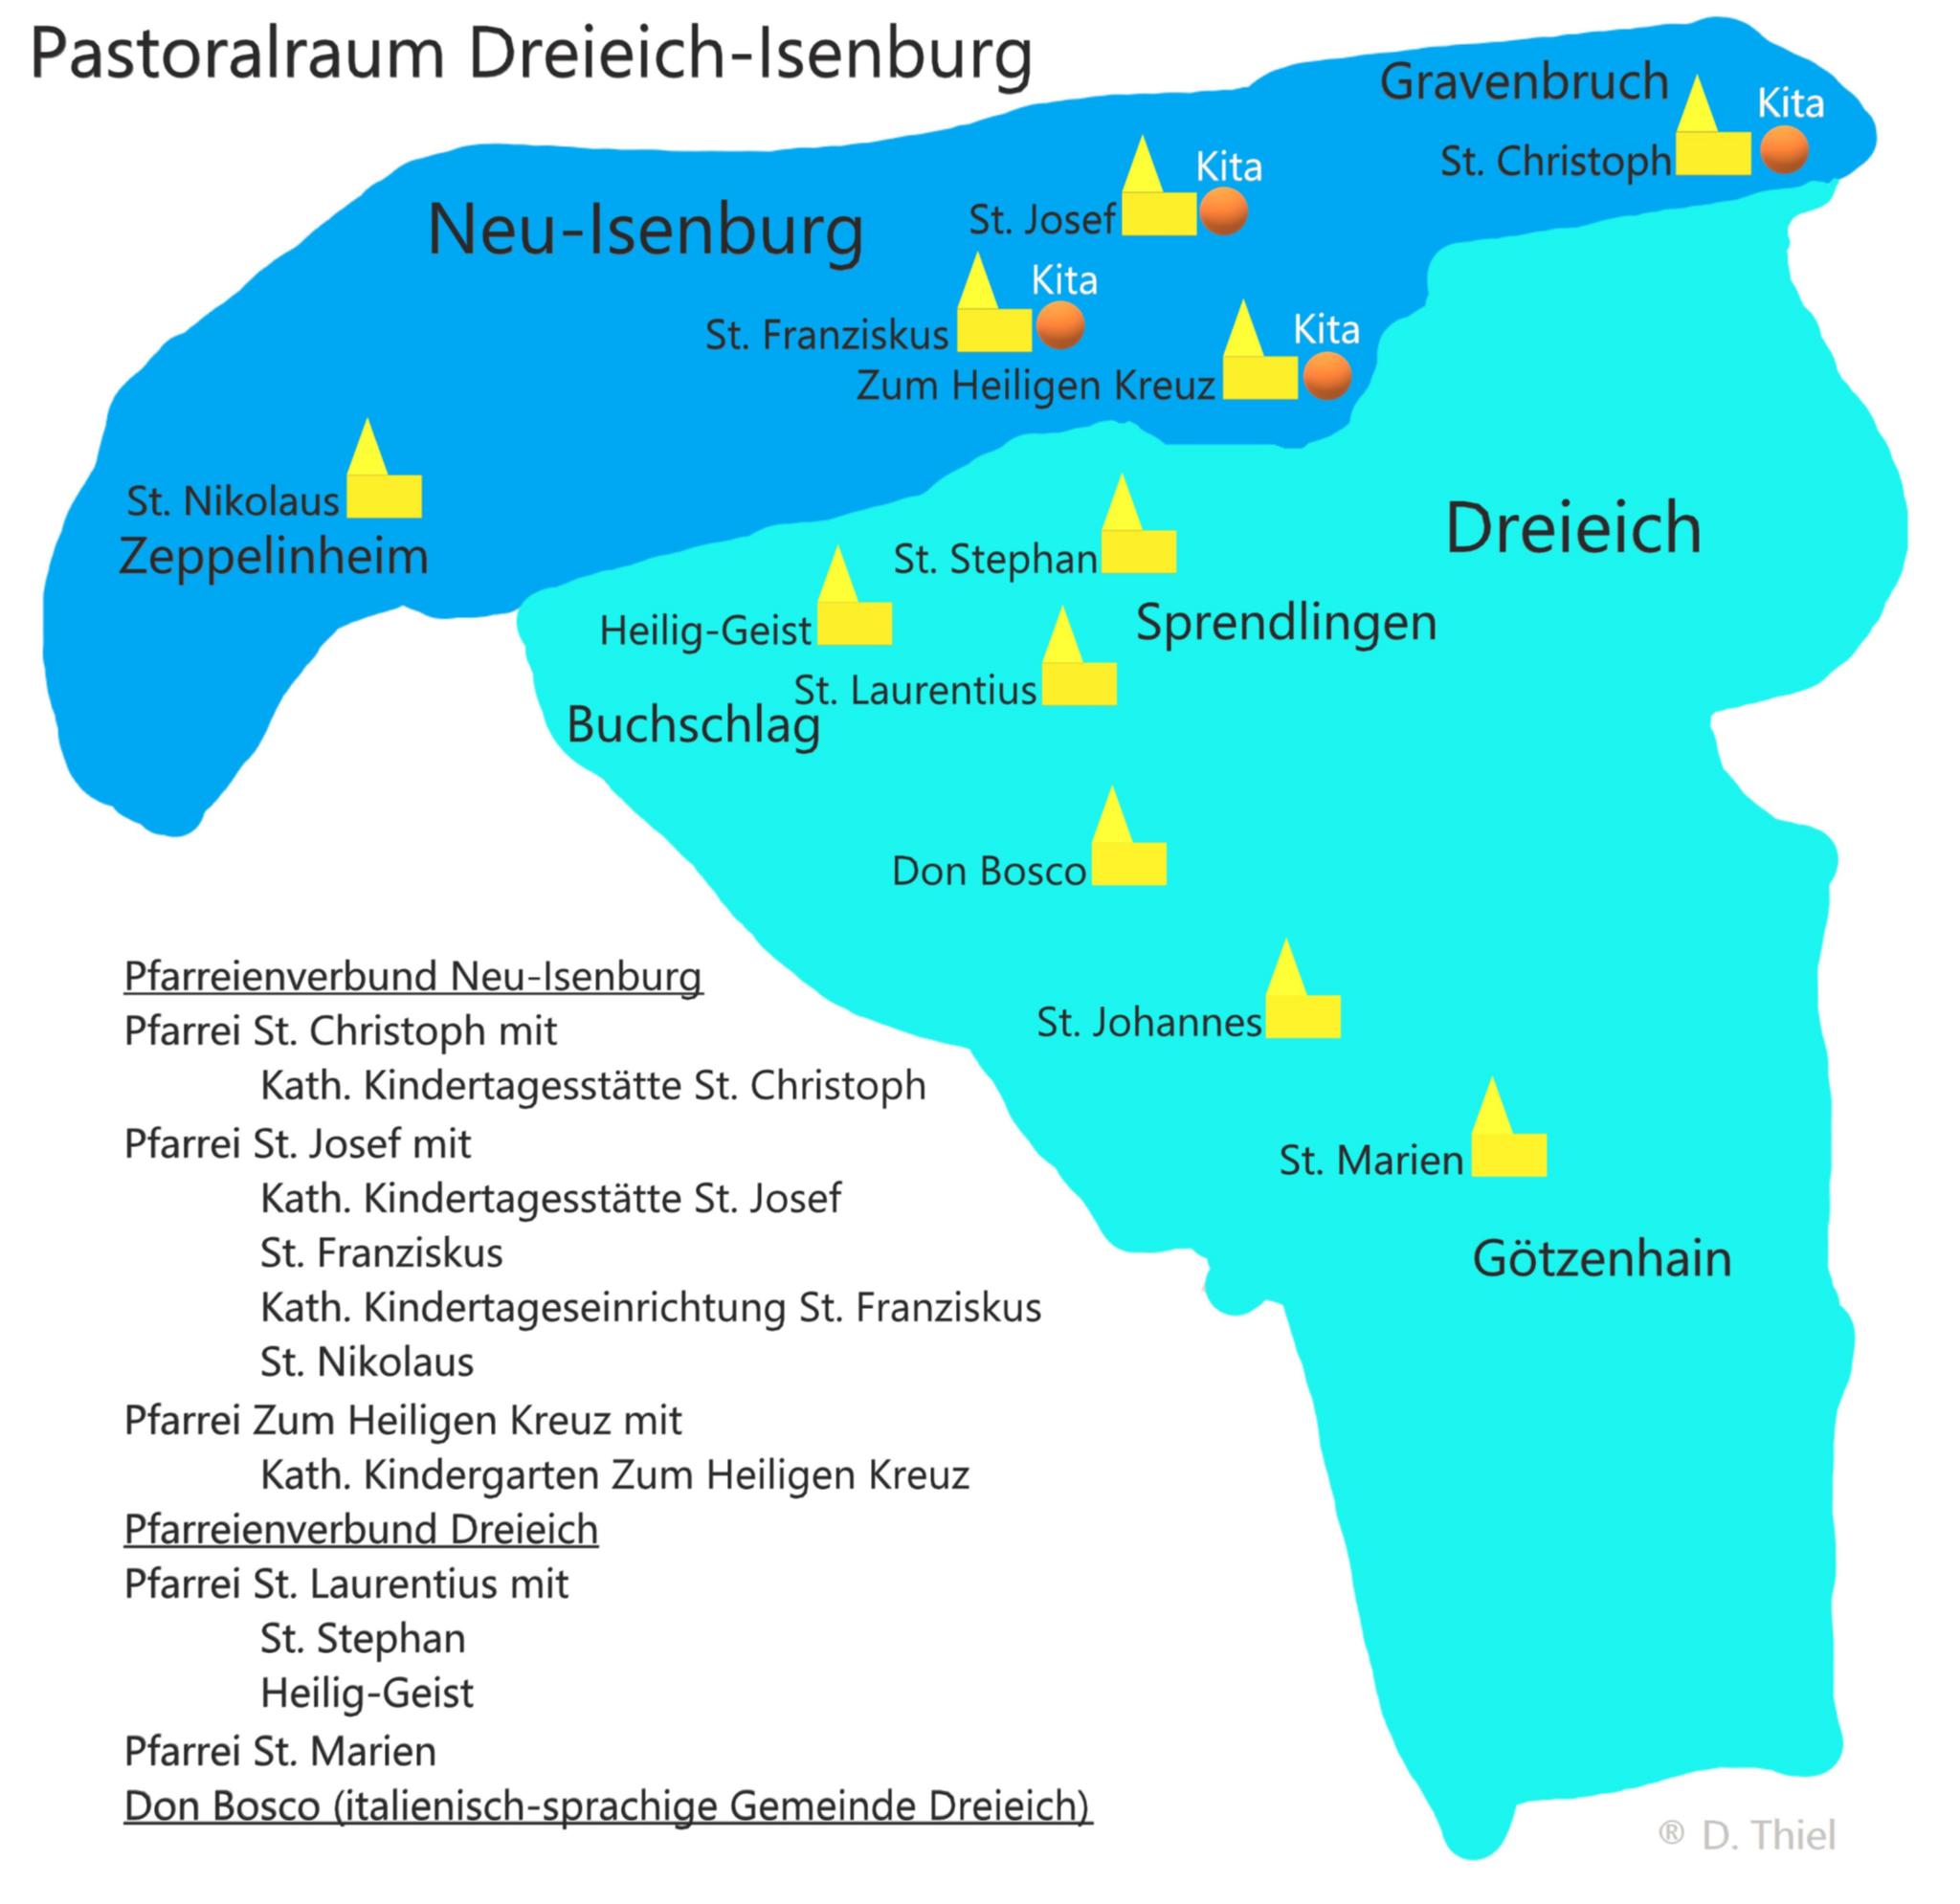 Pastoralraum Dreieich Isenburg